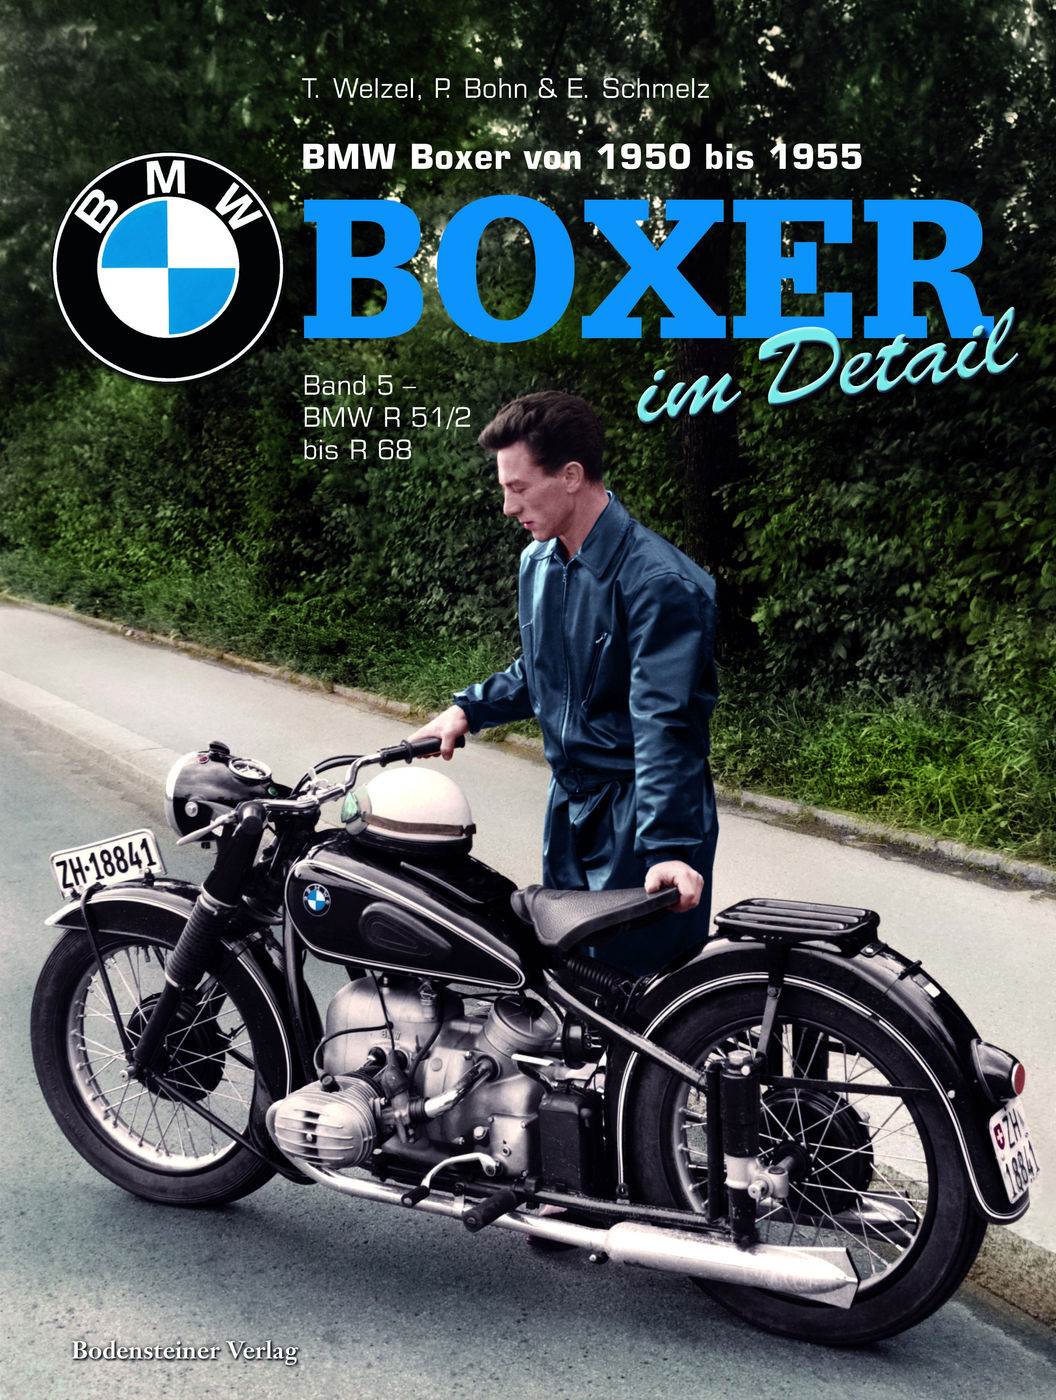 BMW Boxer von 1950 bis1955
BMW Boxer von 1950 bis1955
BMW Boxer 